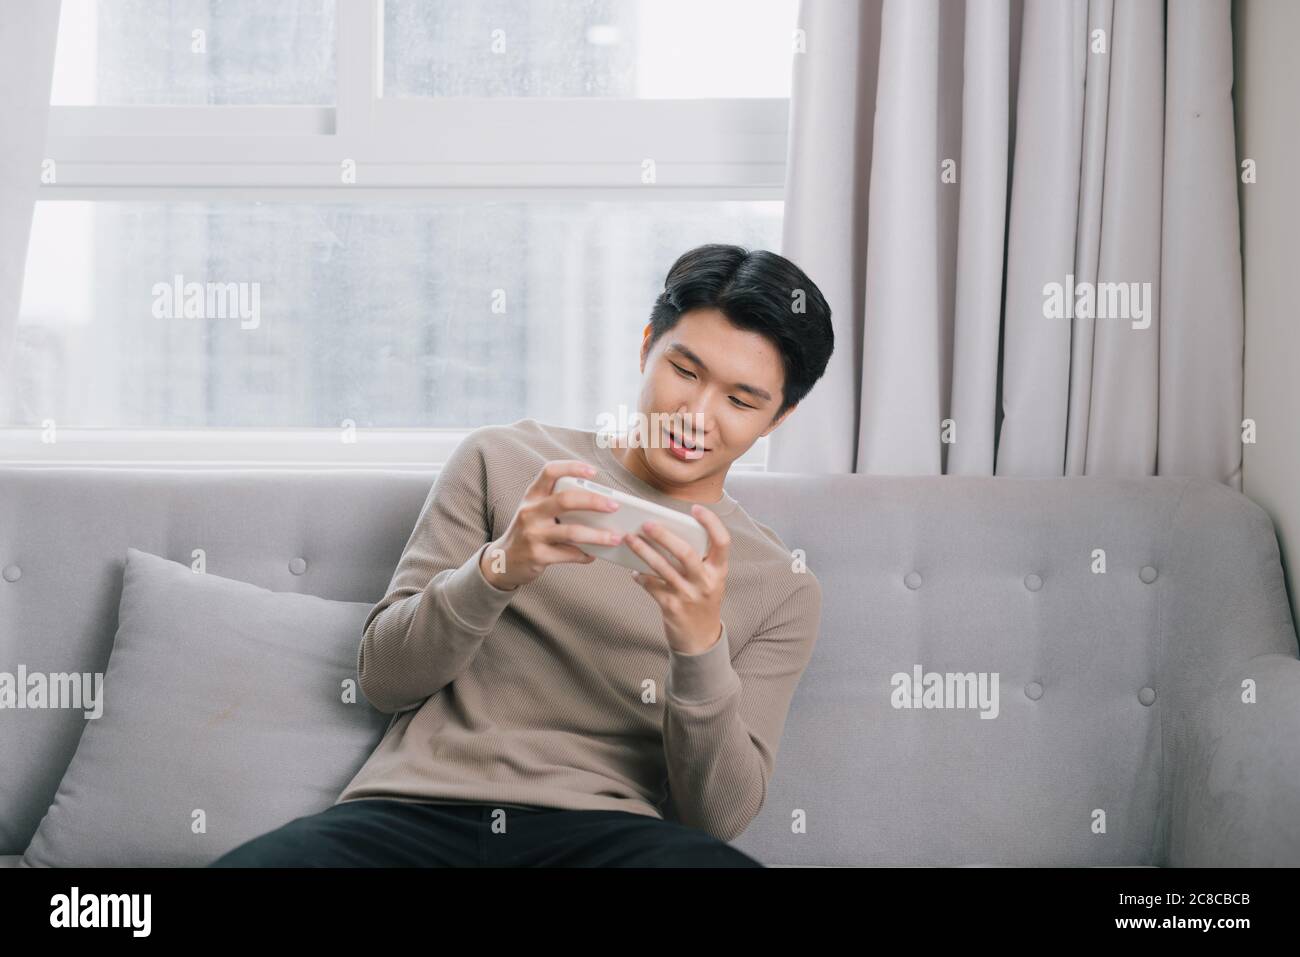 Le jeune homme asiatique joue sérieusement sur son smartphone sur le canapé. Banque D'Images